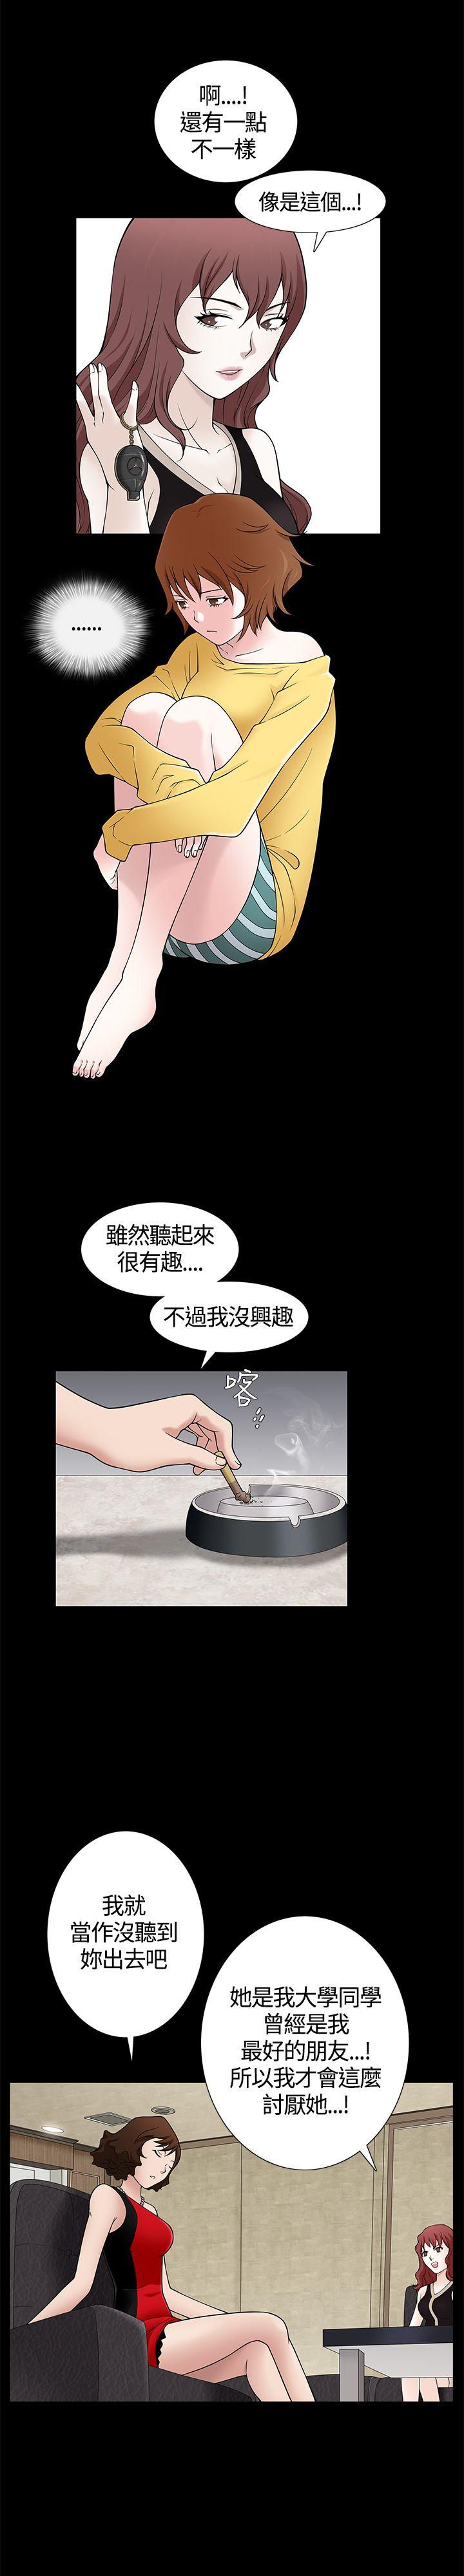 韩国污漫画 人妻性解放3:粗糙的手 第7话 17